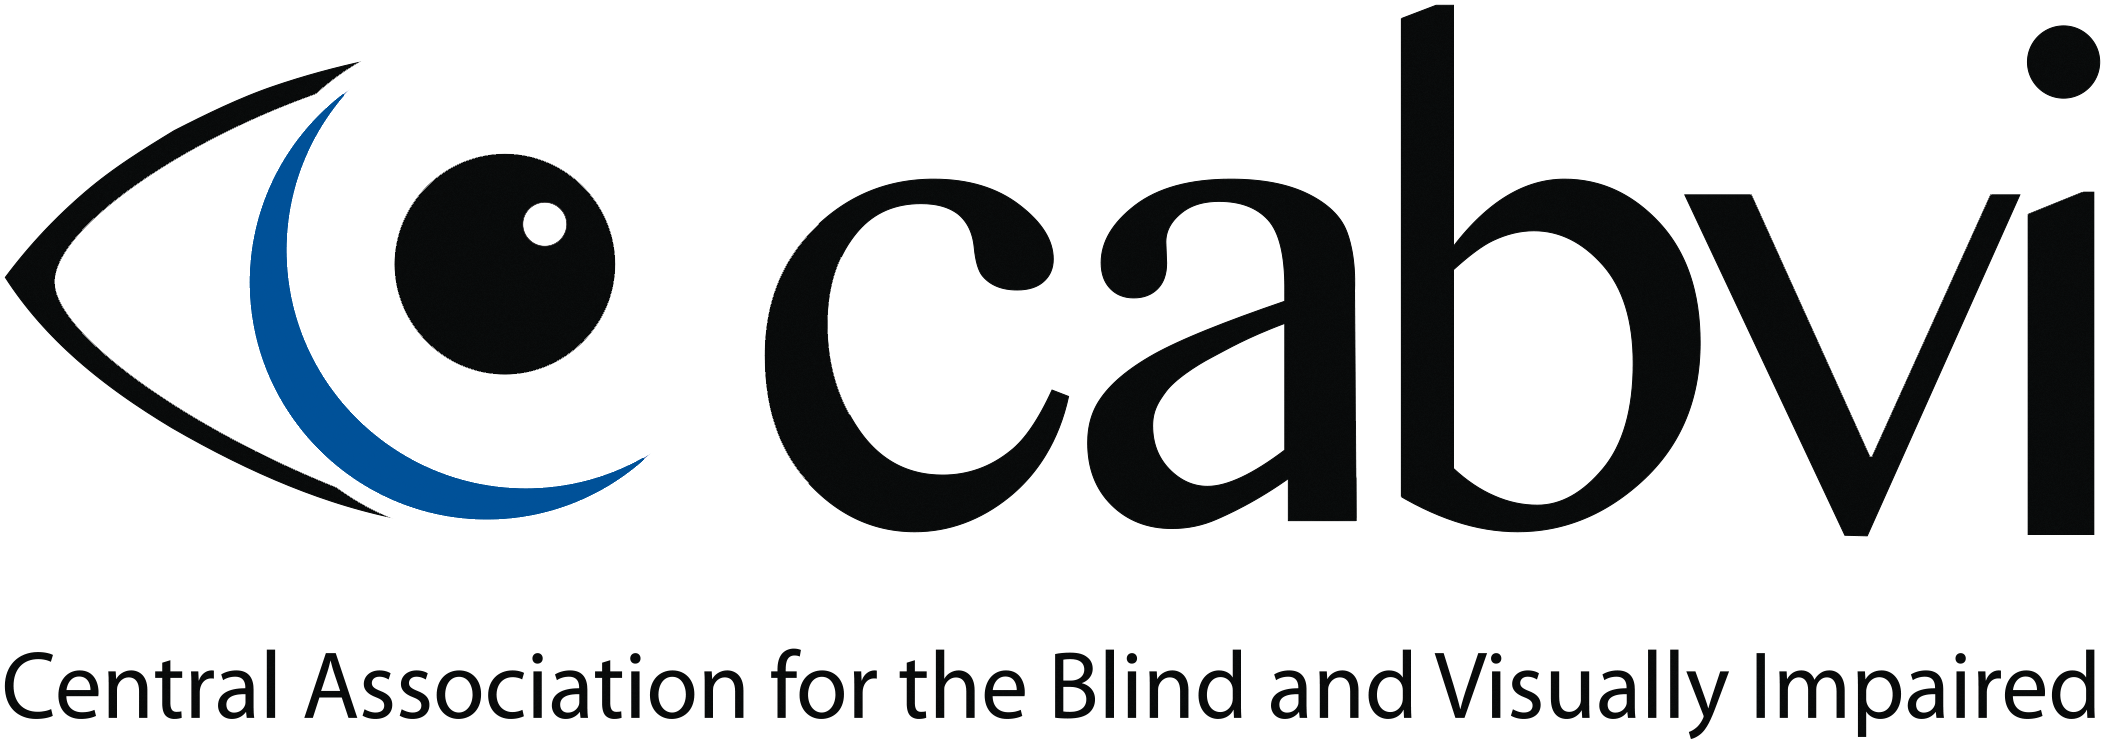 CABVI logo_2C